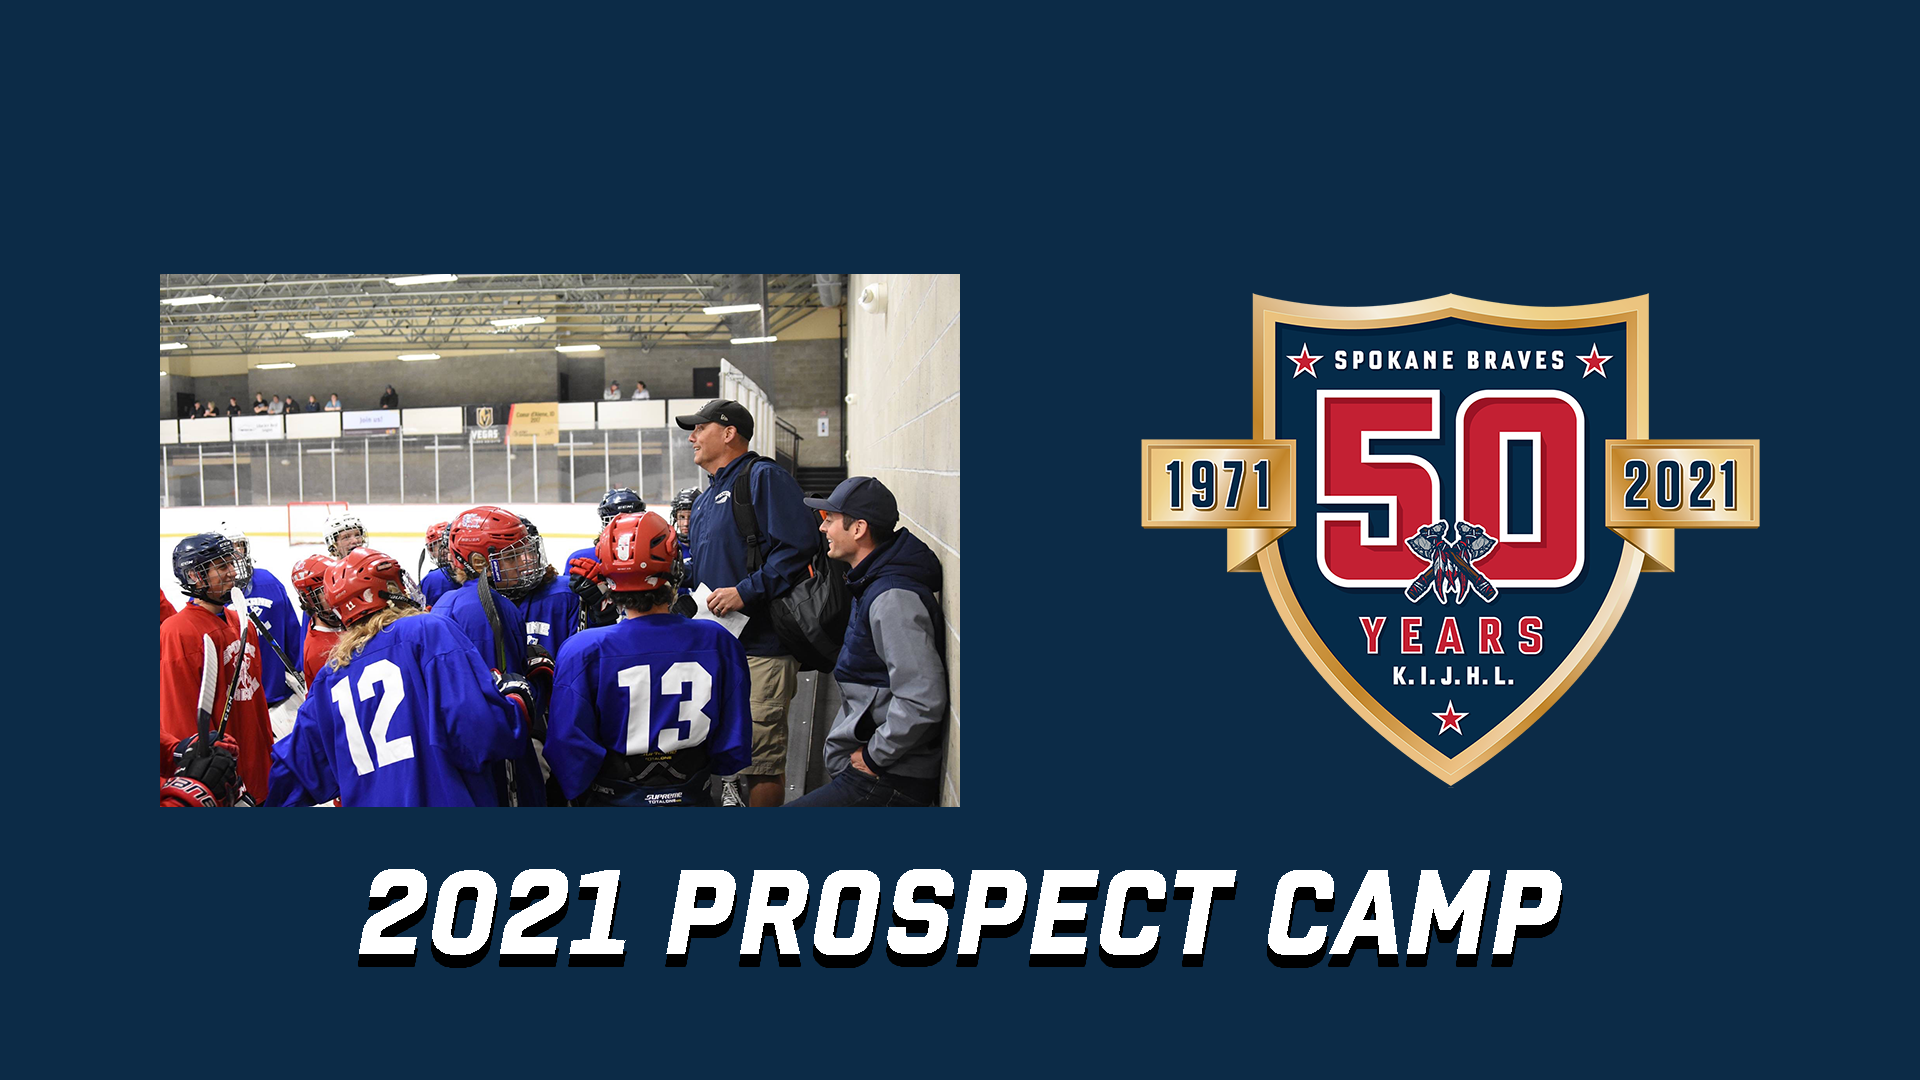 Spokane Braves 2021 Prospect Camp